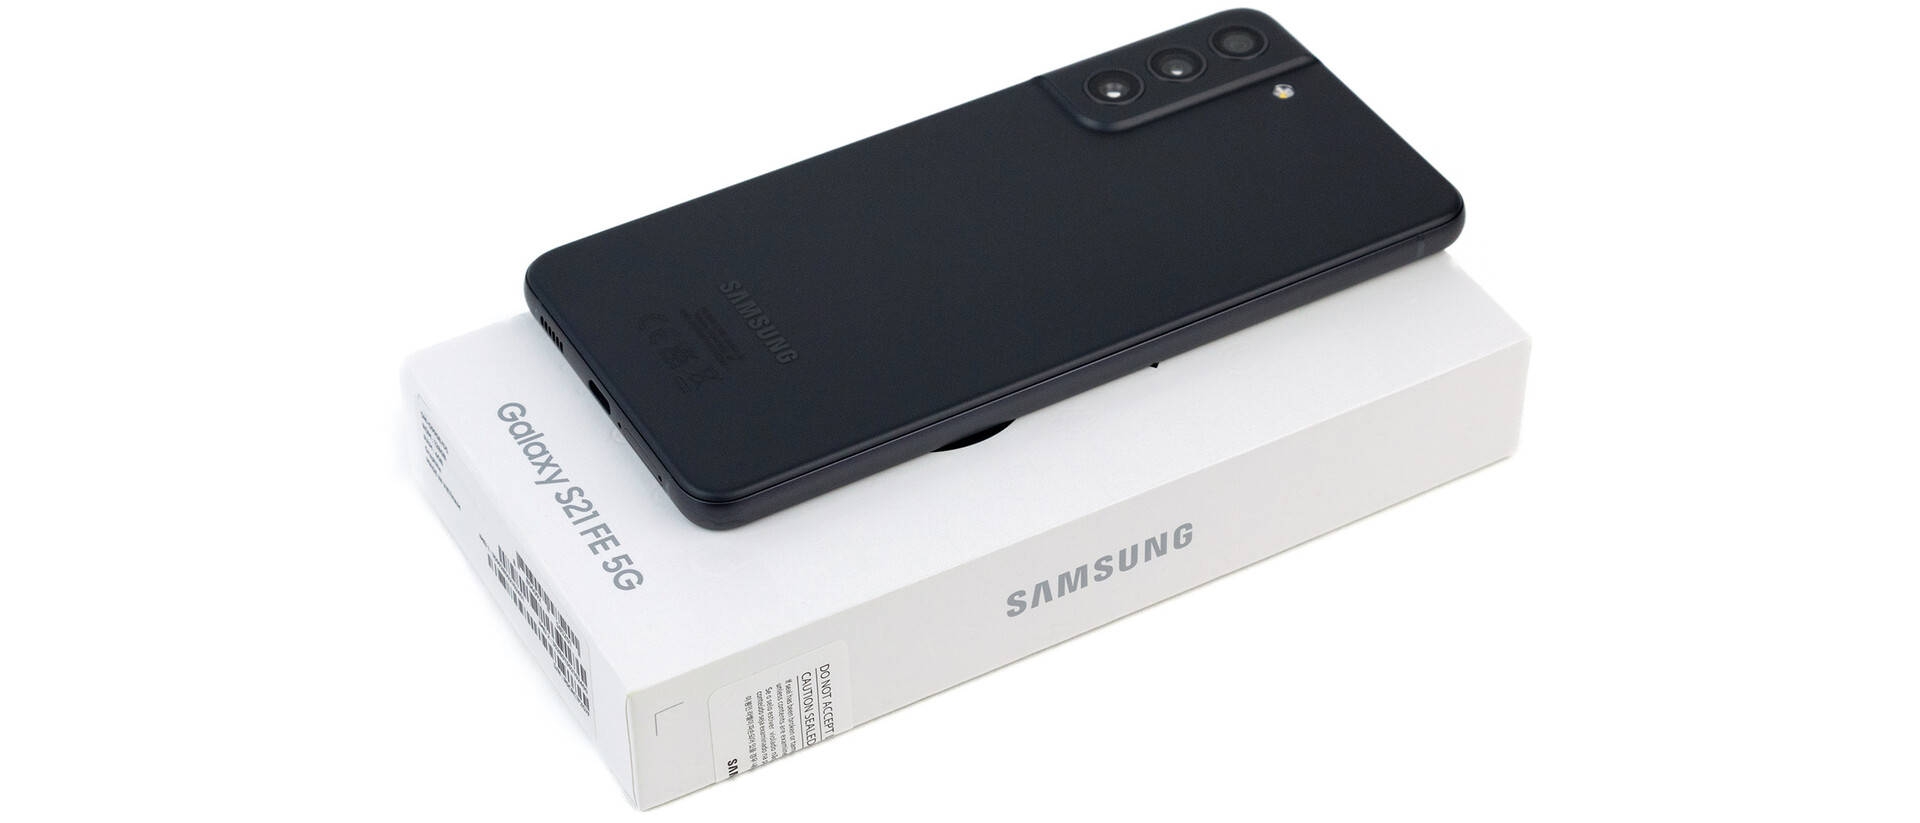 Samsung galaxy s21 fe 5g